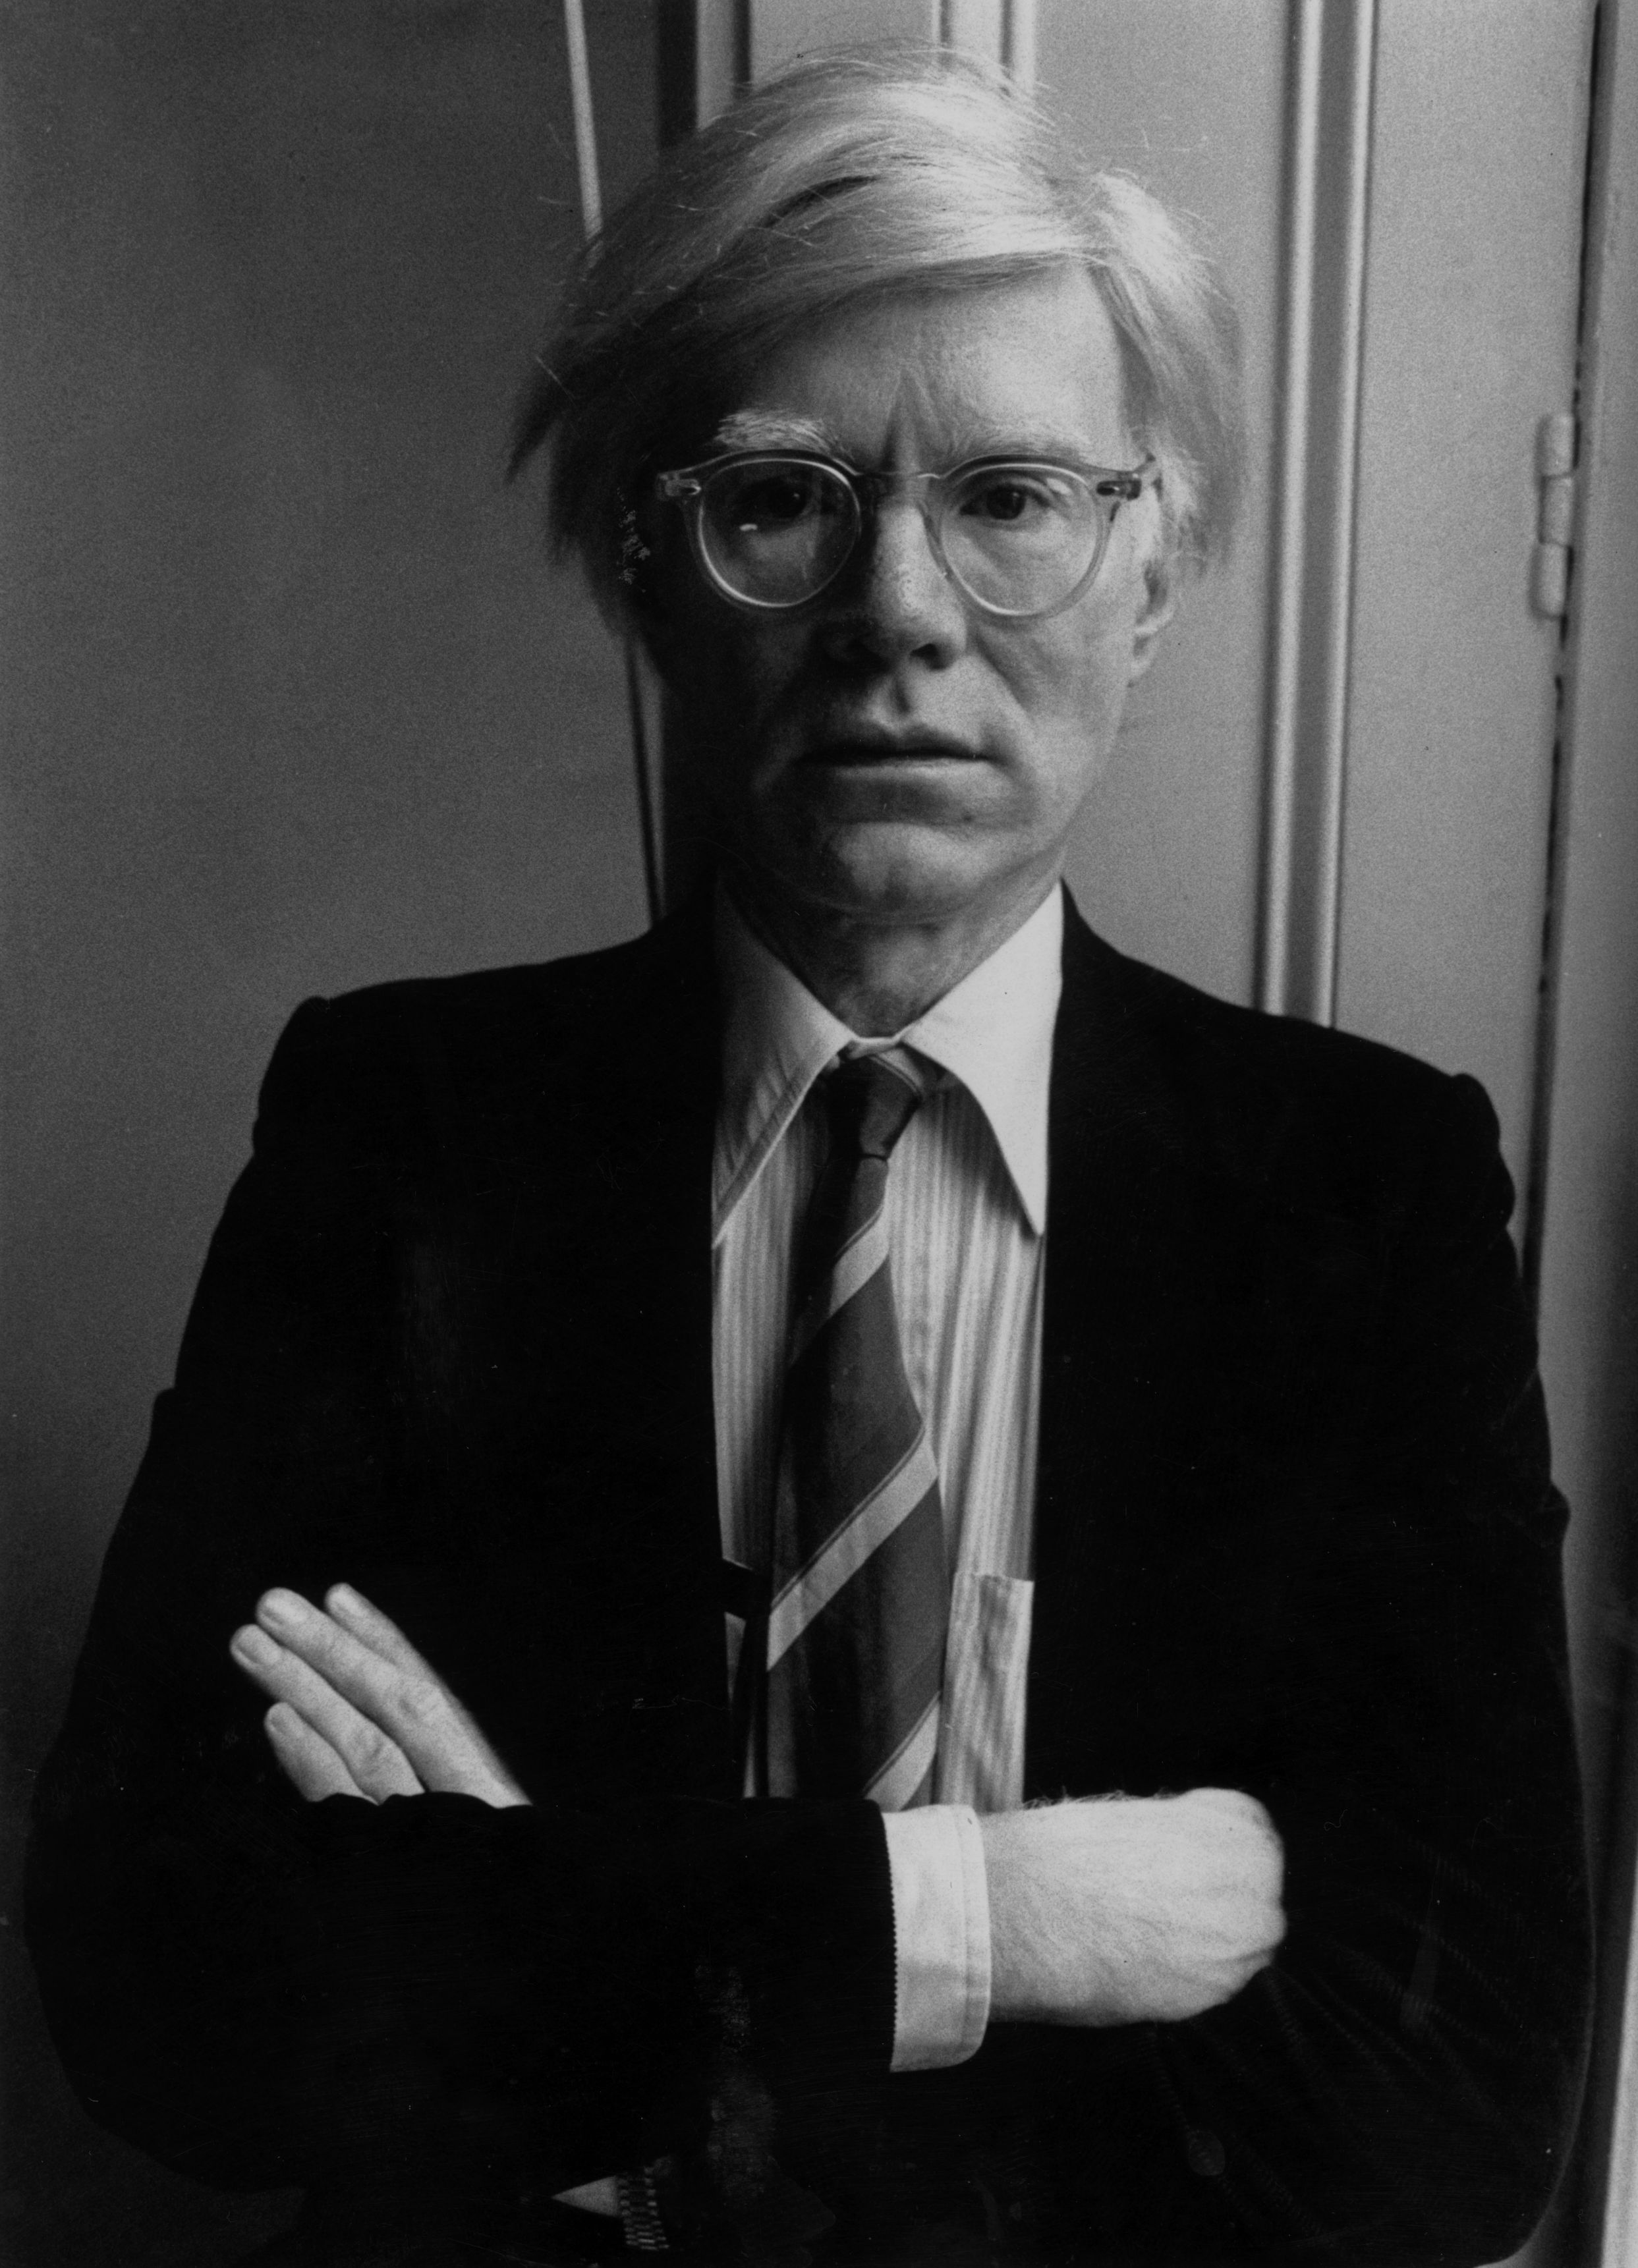 Andy Warhol - 6 de agosto 1928 - 22 de febrero de 1987